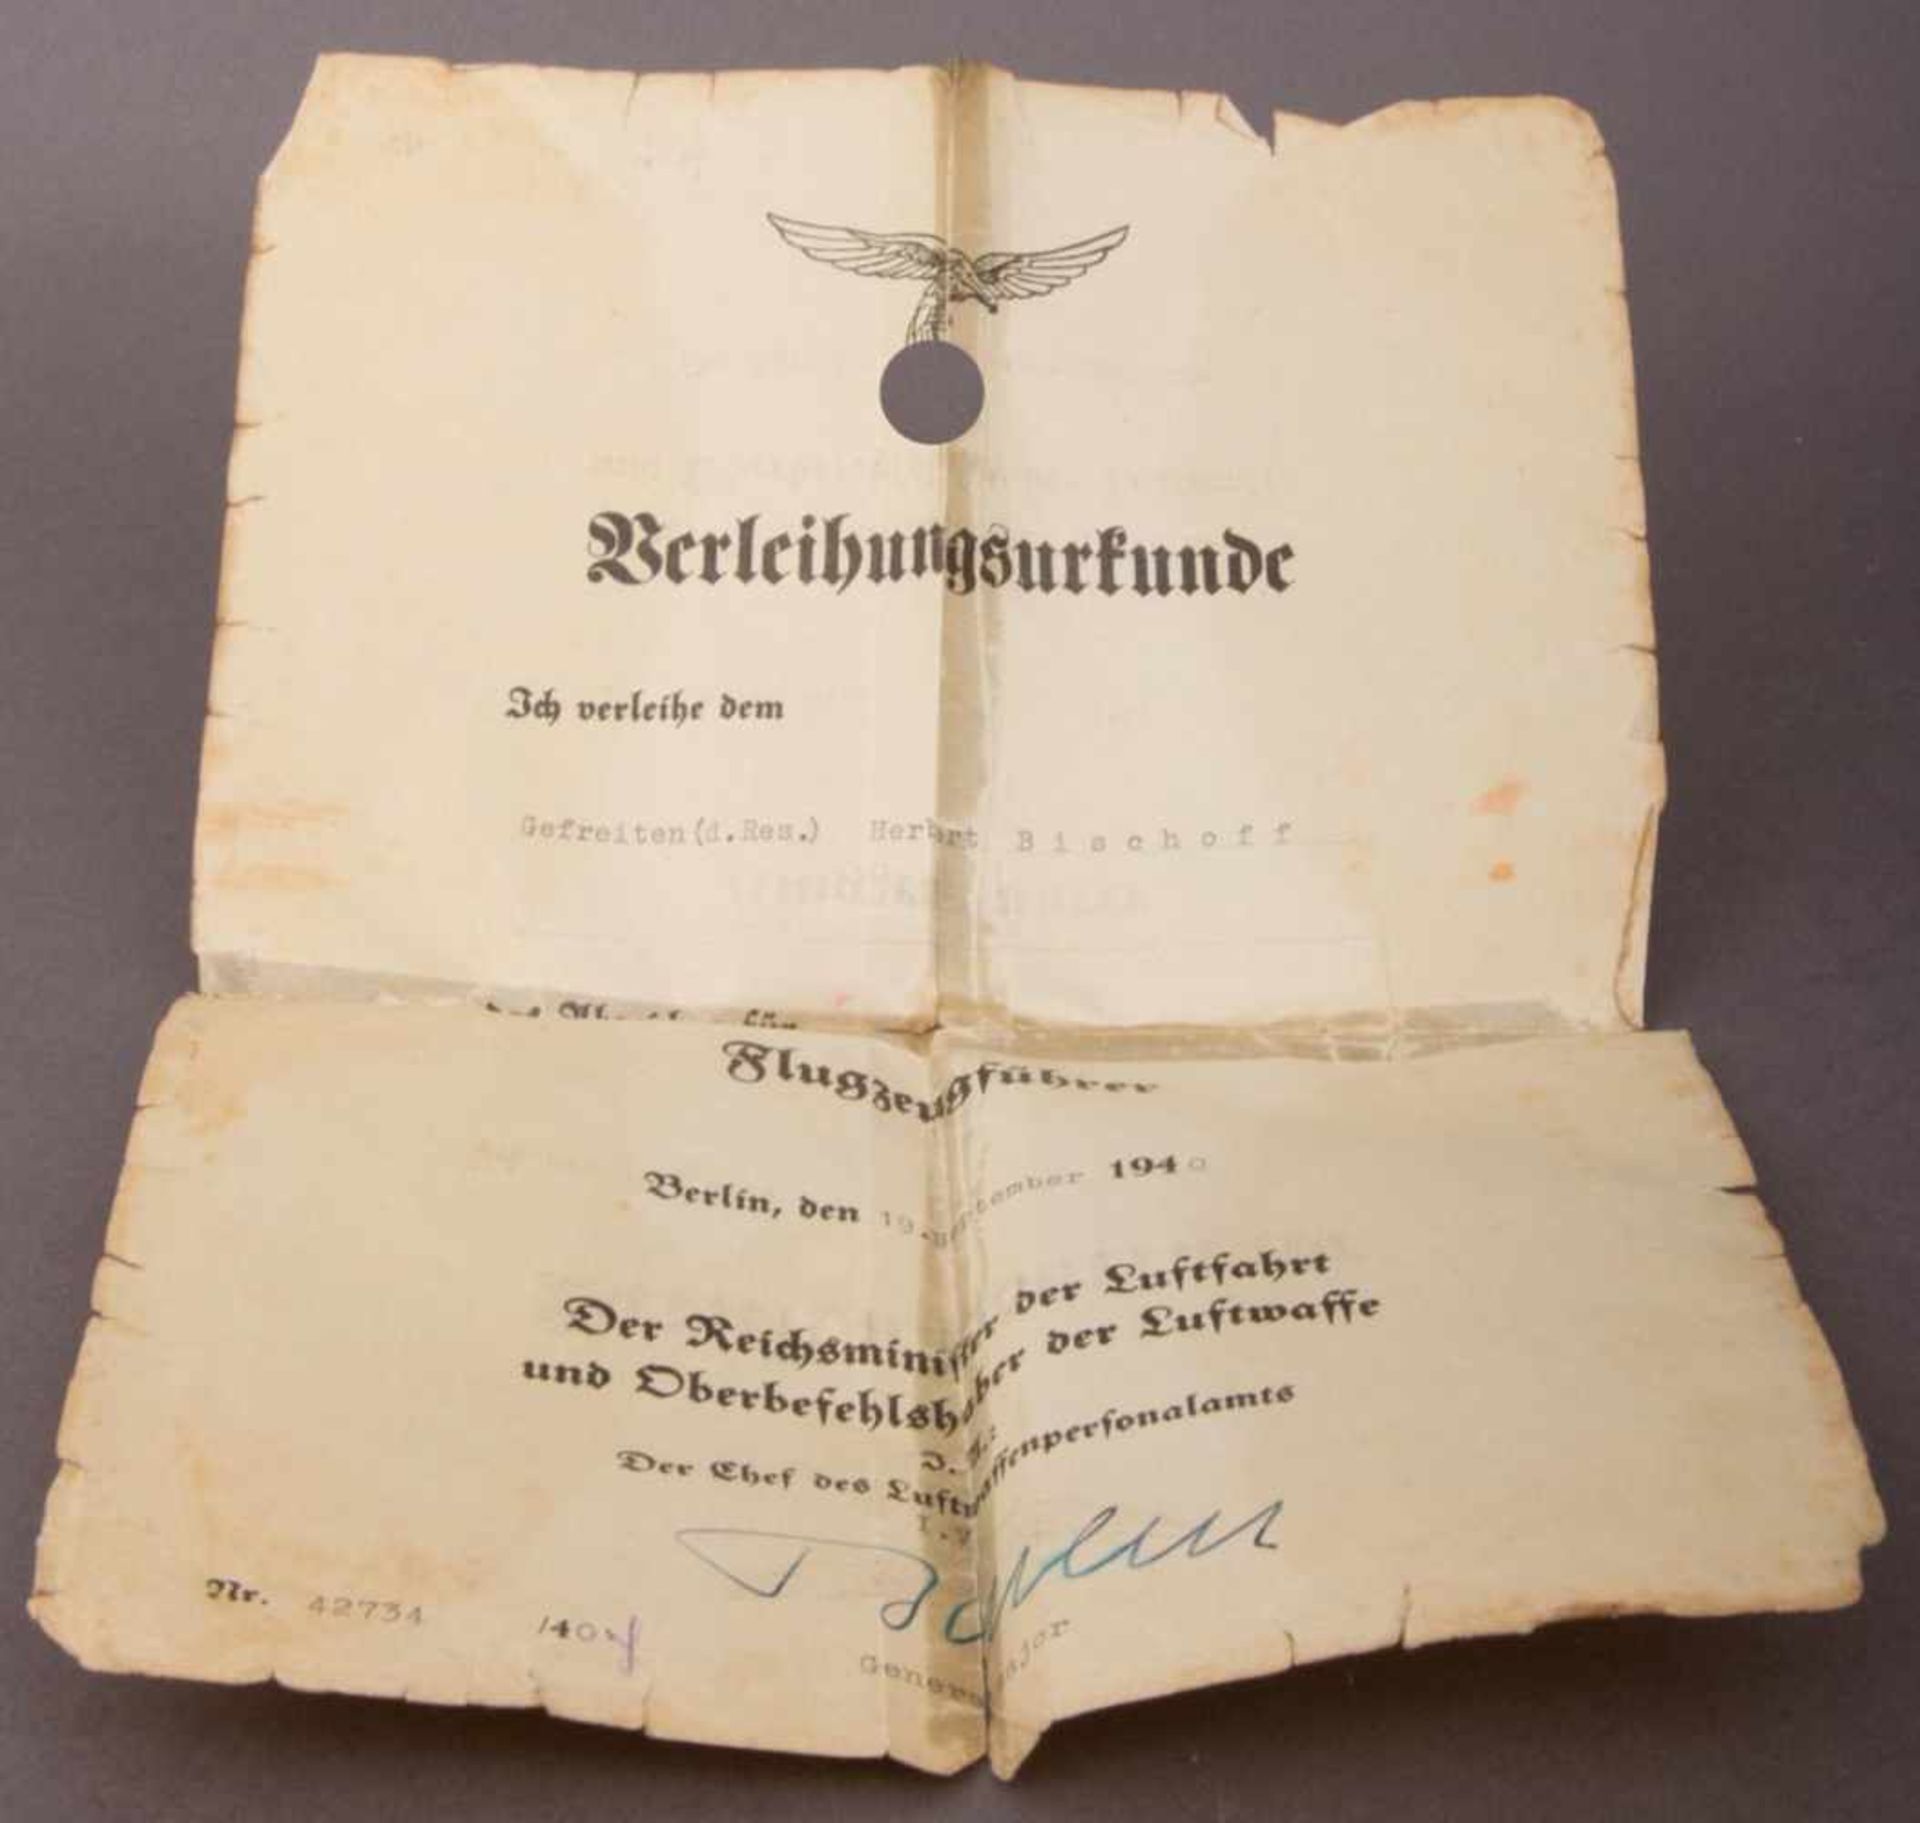 Originale "Flugzeugführer"-Abzeichen Verleihungsurkunde vom 19. September 1940 an den Gefreiten